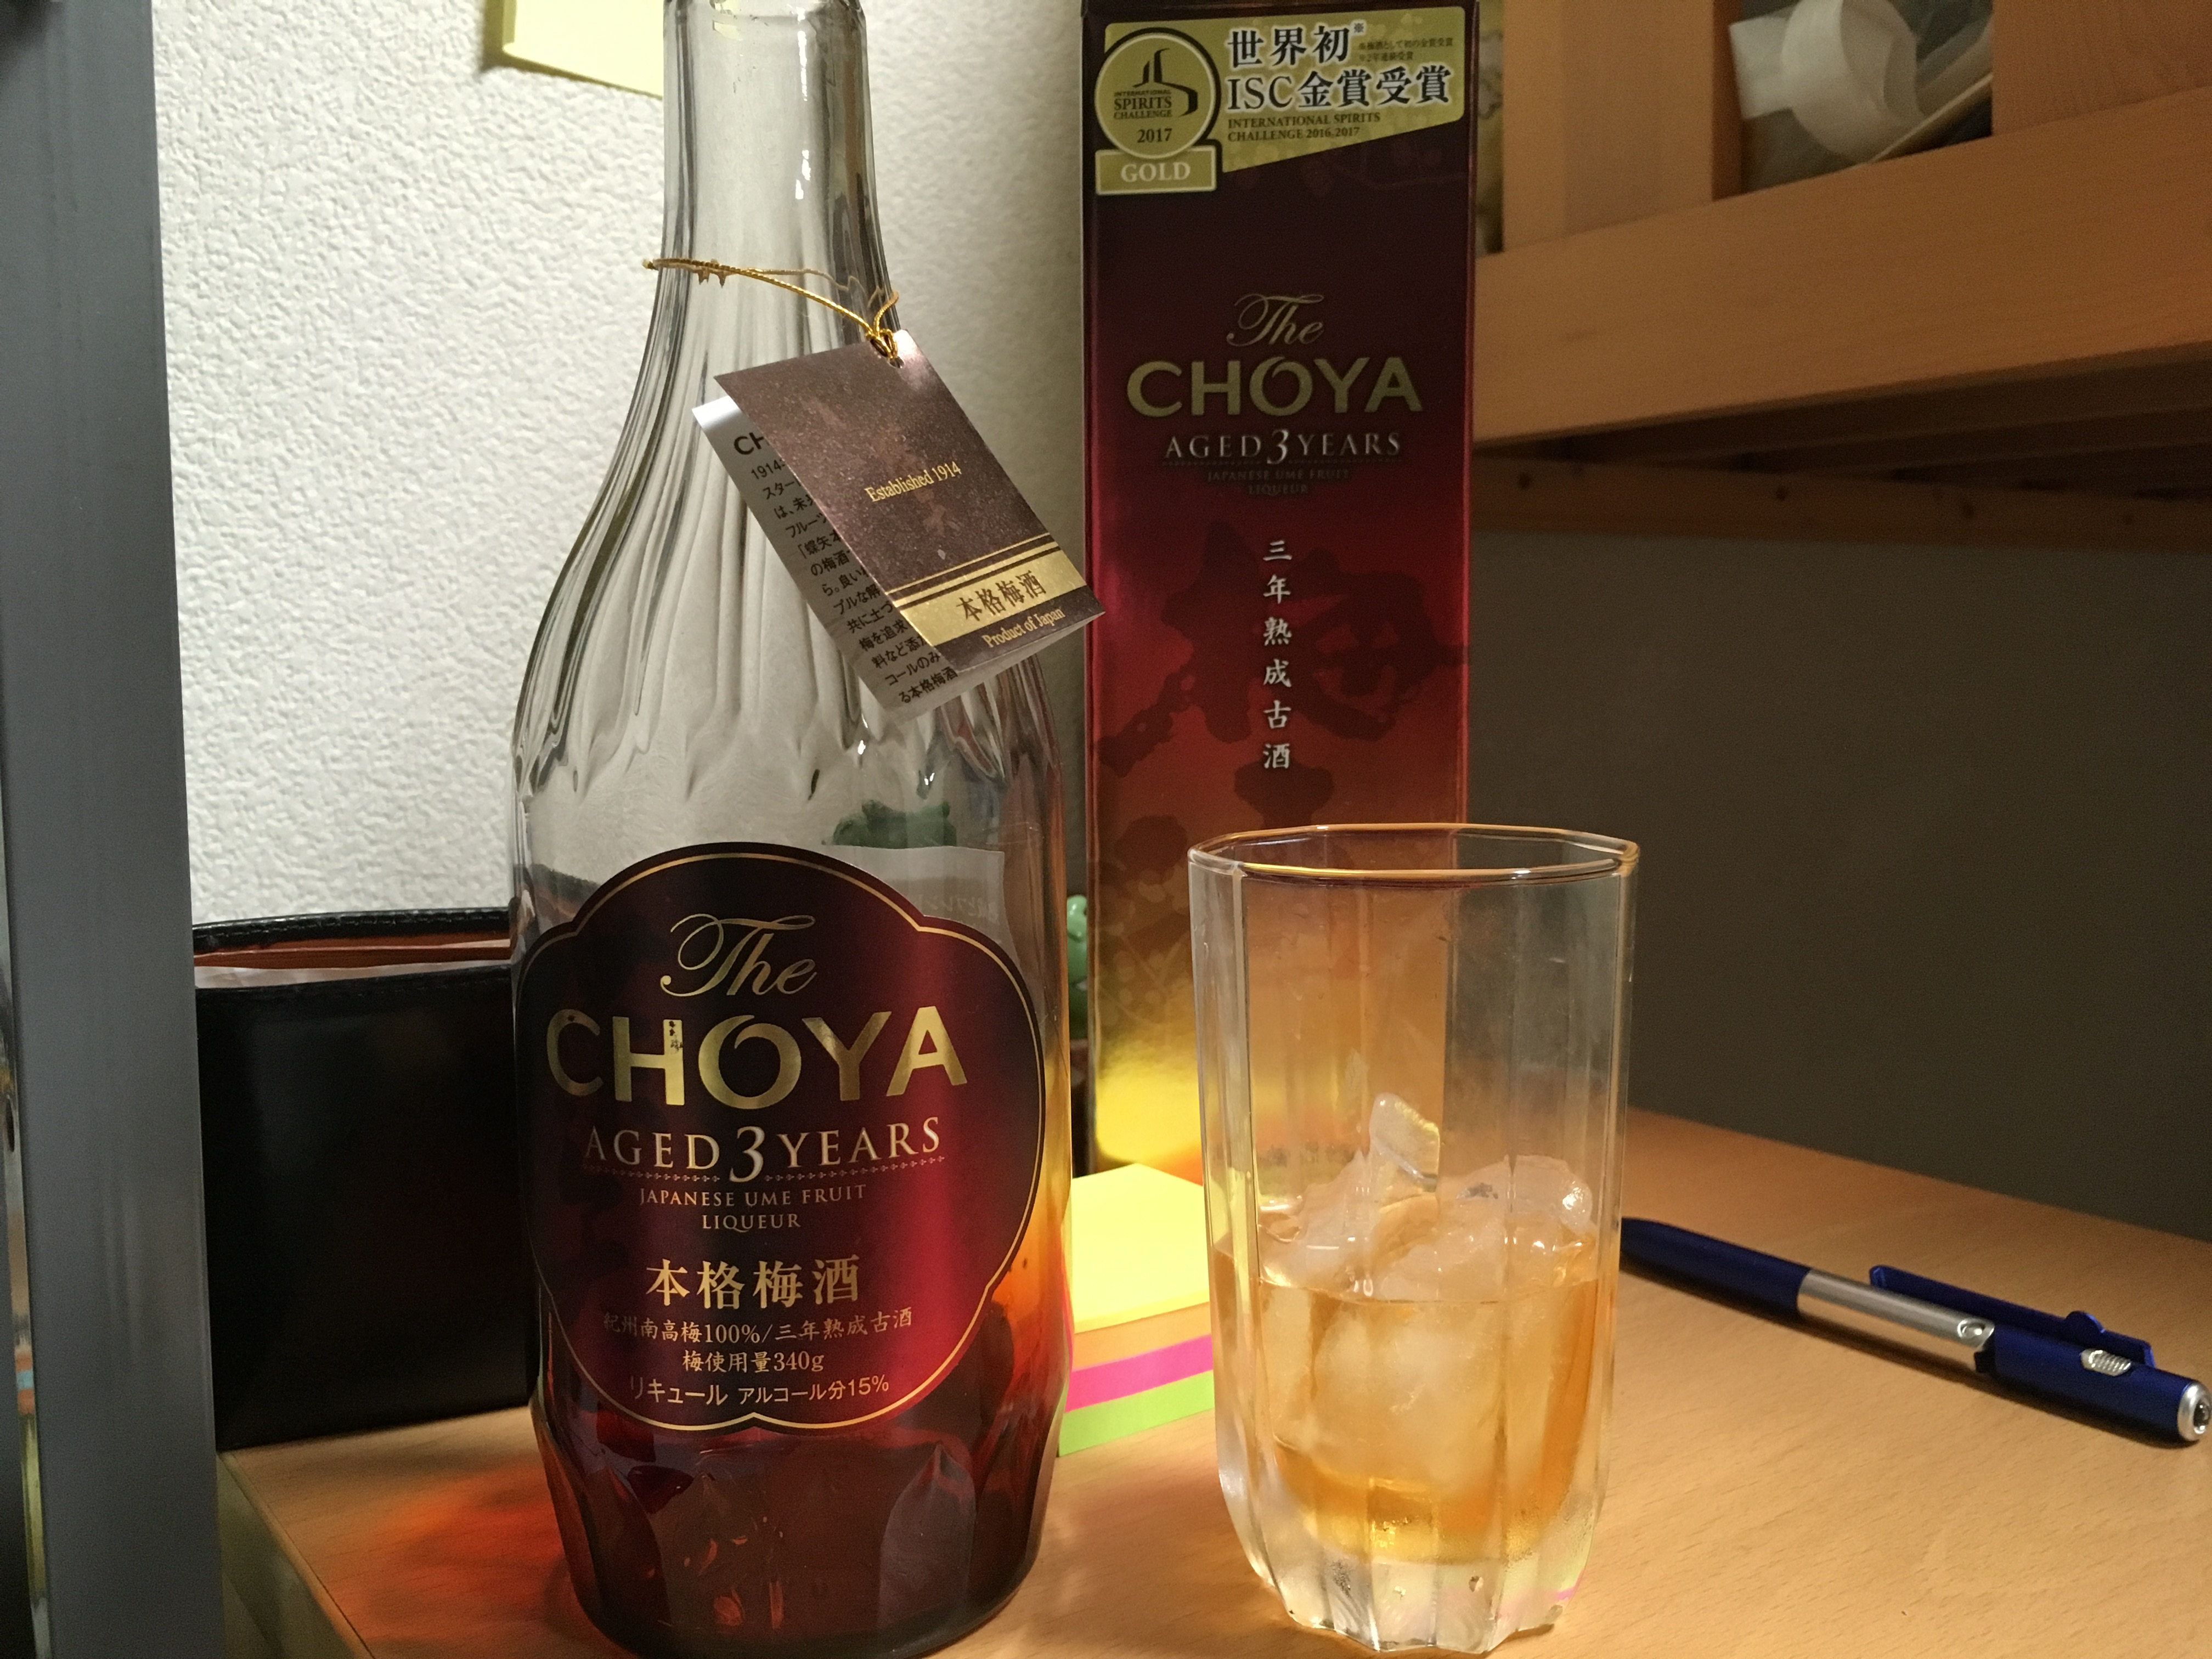 チョーヤの本格梅酒(The CHOYA AGED 3YEARS)飲んだ感想 | 梅酒に恋して♪